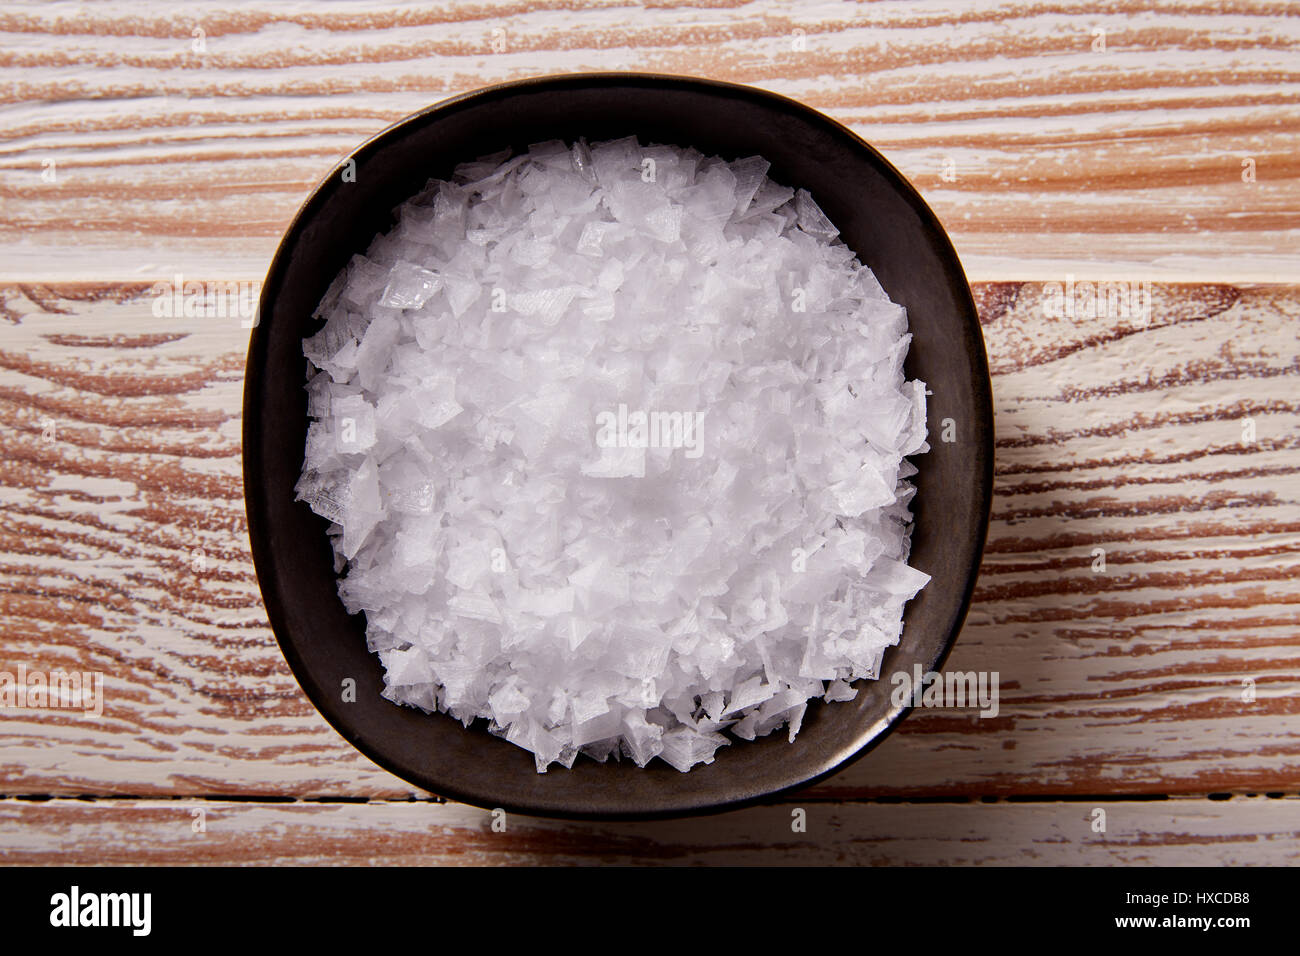 Maldon sale marino fiocchi in una ciotola su una tavola di legno